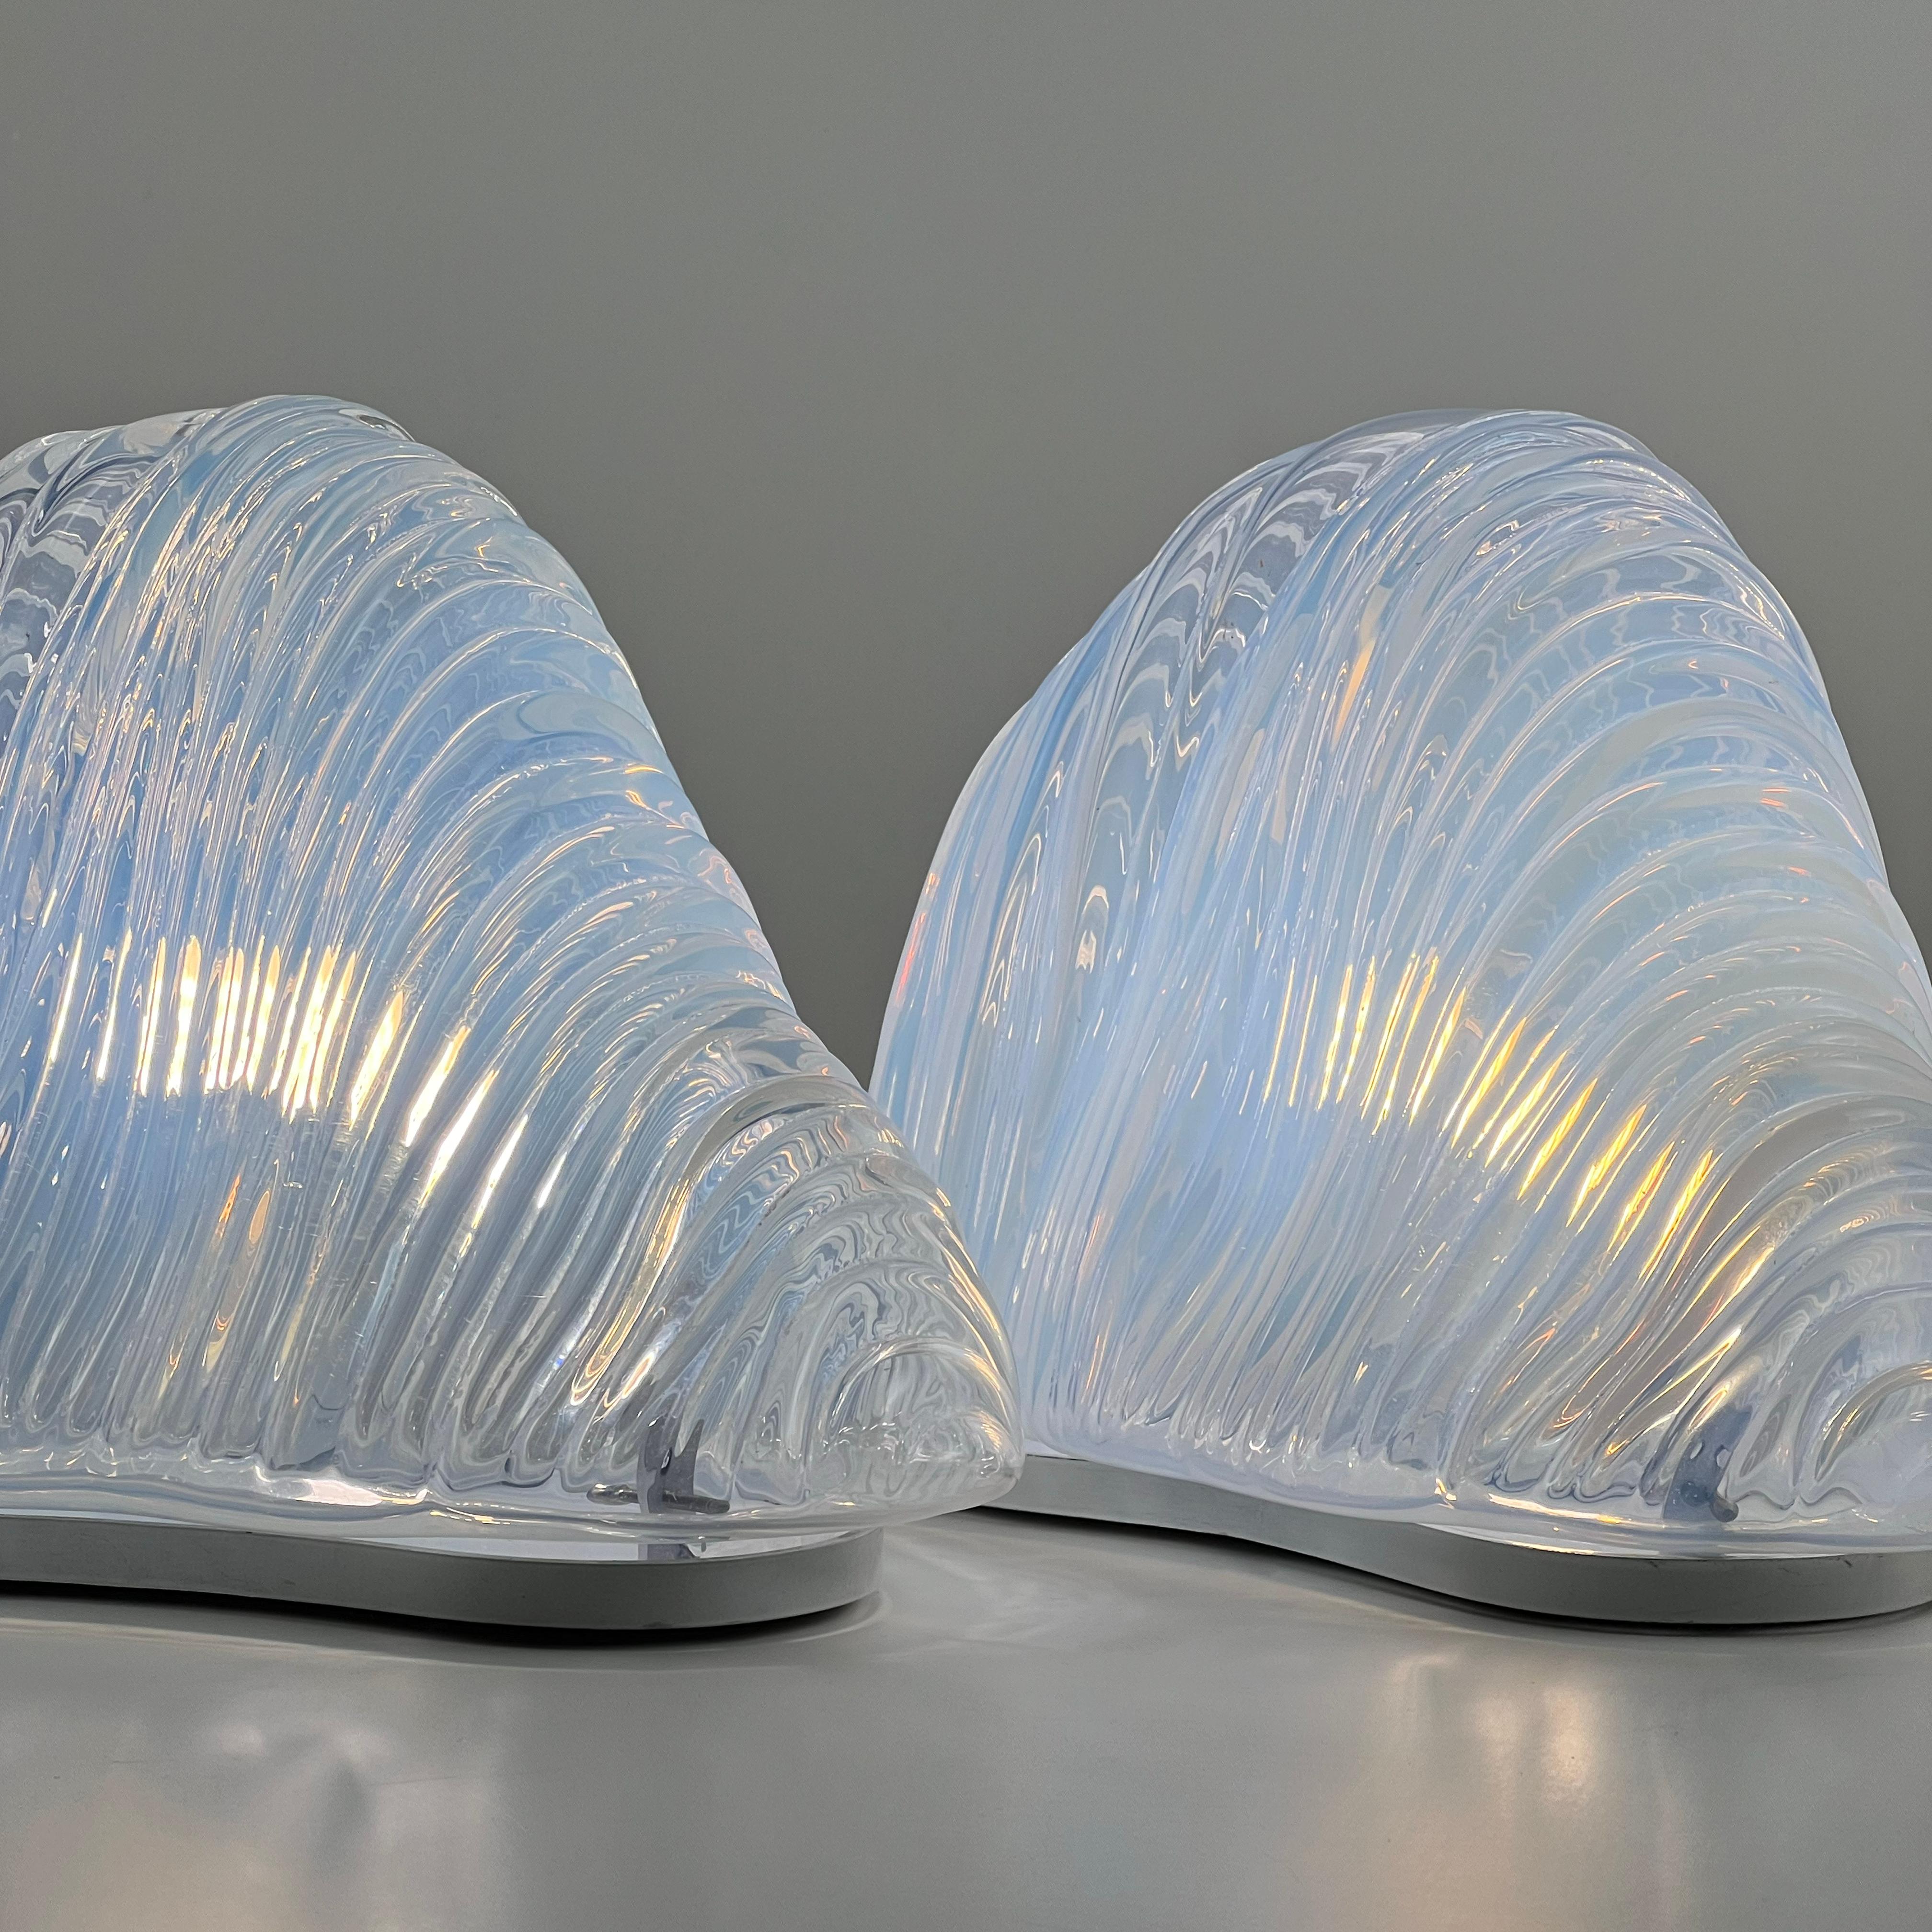 Paar Murano-Tischlampen „Iceberg“ aus der Mitte des Jahrhunderts von Carlo Nason, Italien 1970er Jahre

Wir präsentieren ein faszinierendes Paar italienischer schillernder Murano-Tischlampen, die von Carlo Nason für Mazzega entworfen wurden und als